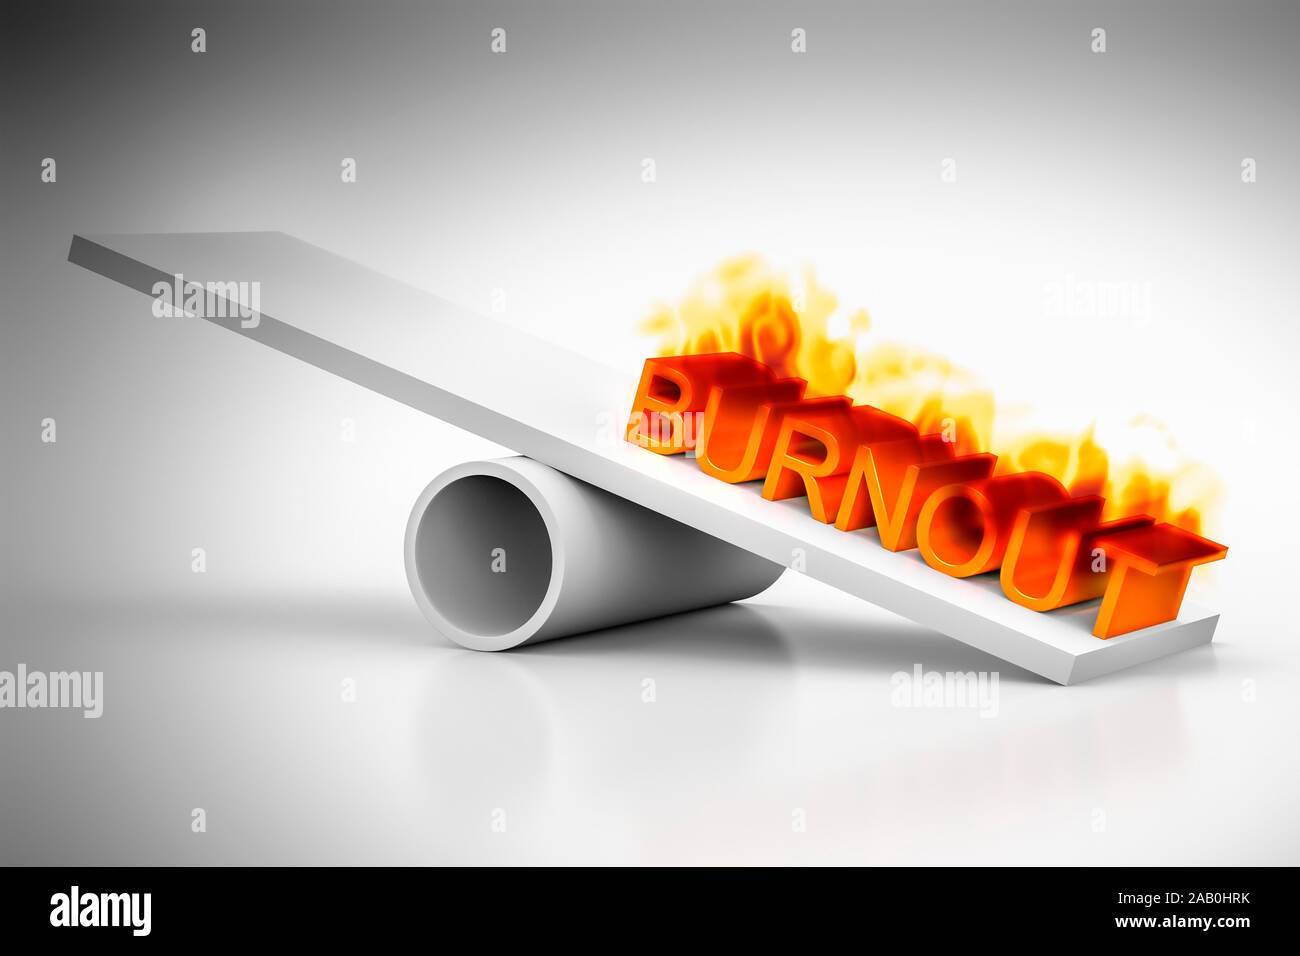 Eine Wippe vor weissem Hintergrund mit dem brennenden Wort "Burnout" Stock Photo